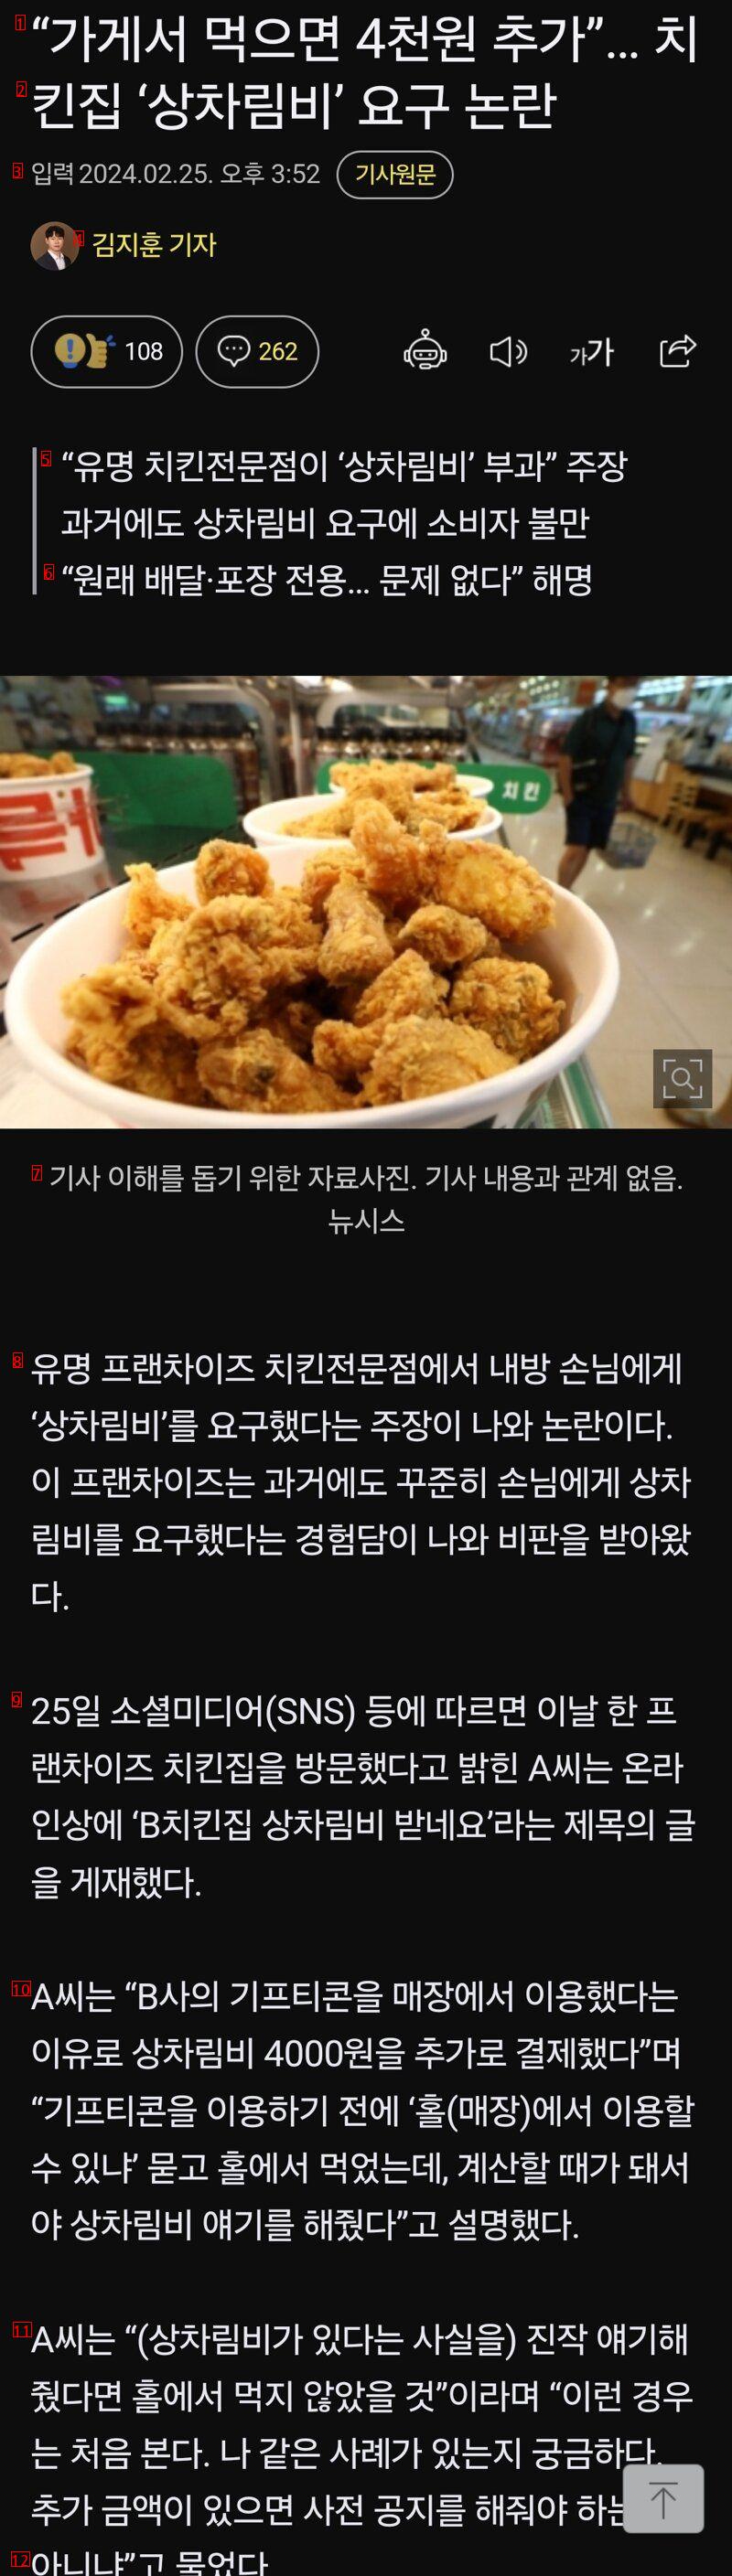 「店で食べると4千ウォン追加」··· 「チキン屋の膳立て費」要求論議